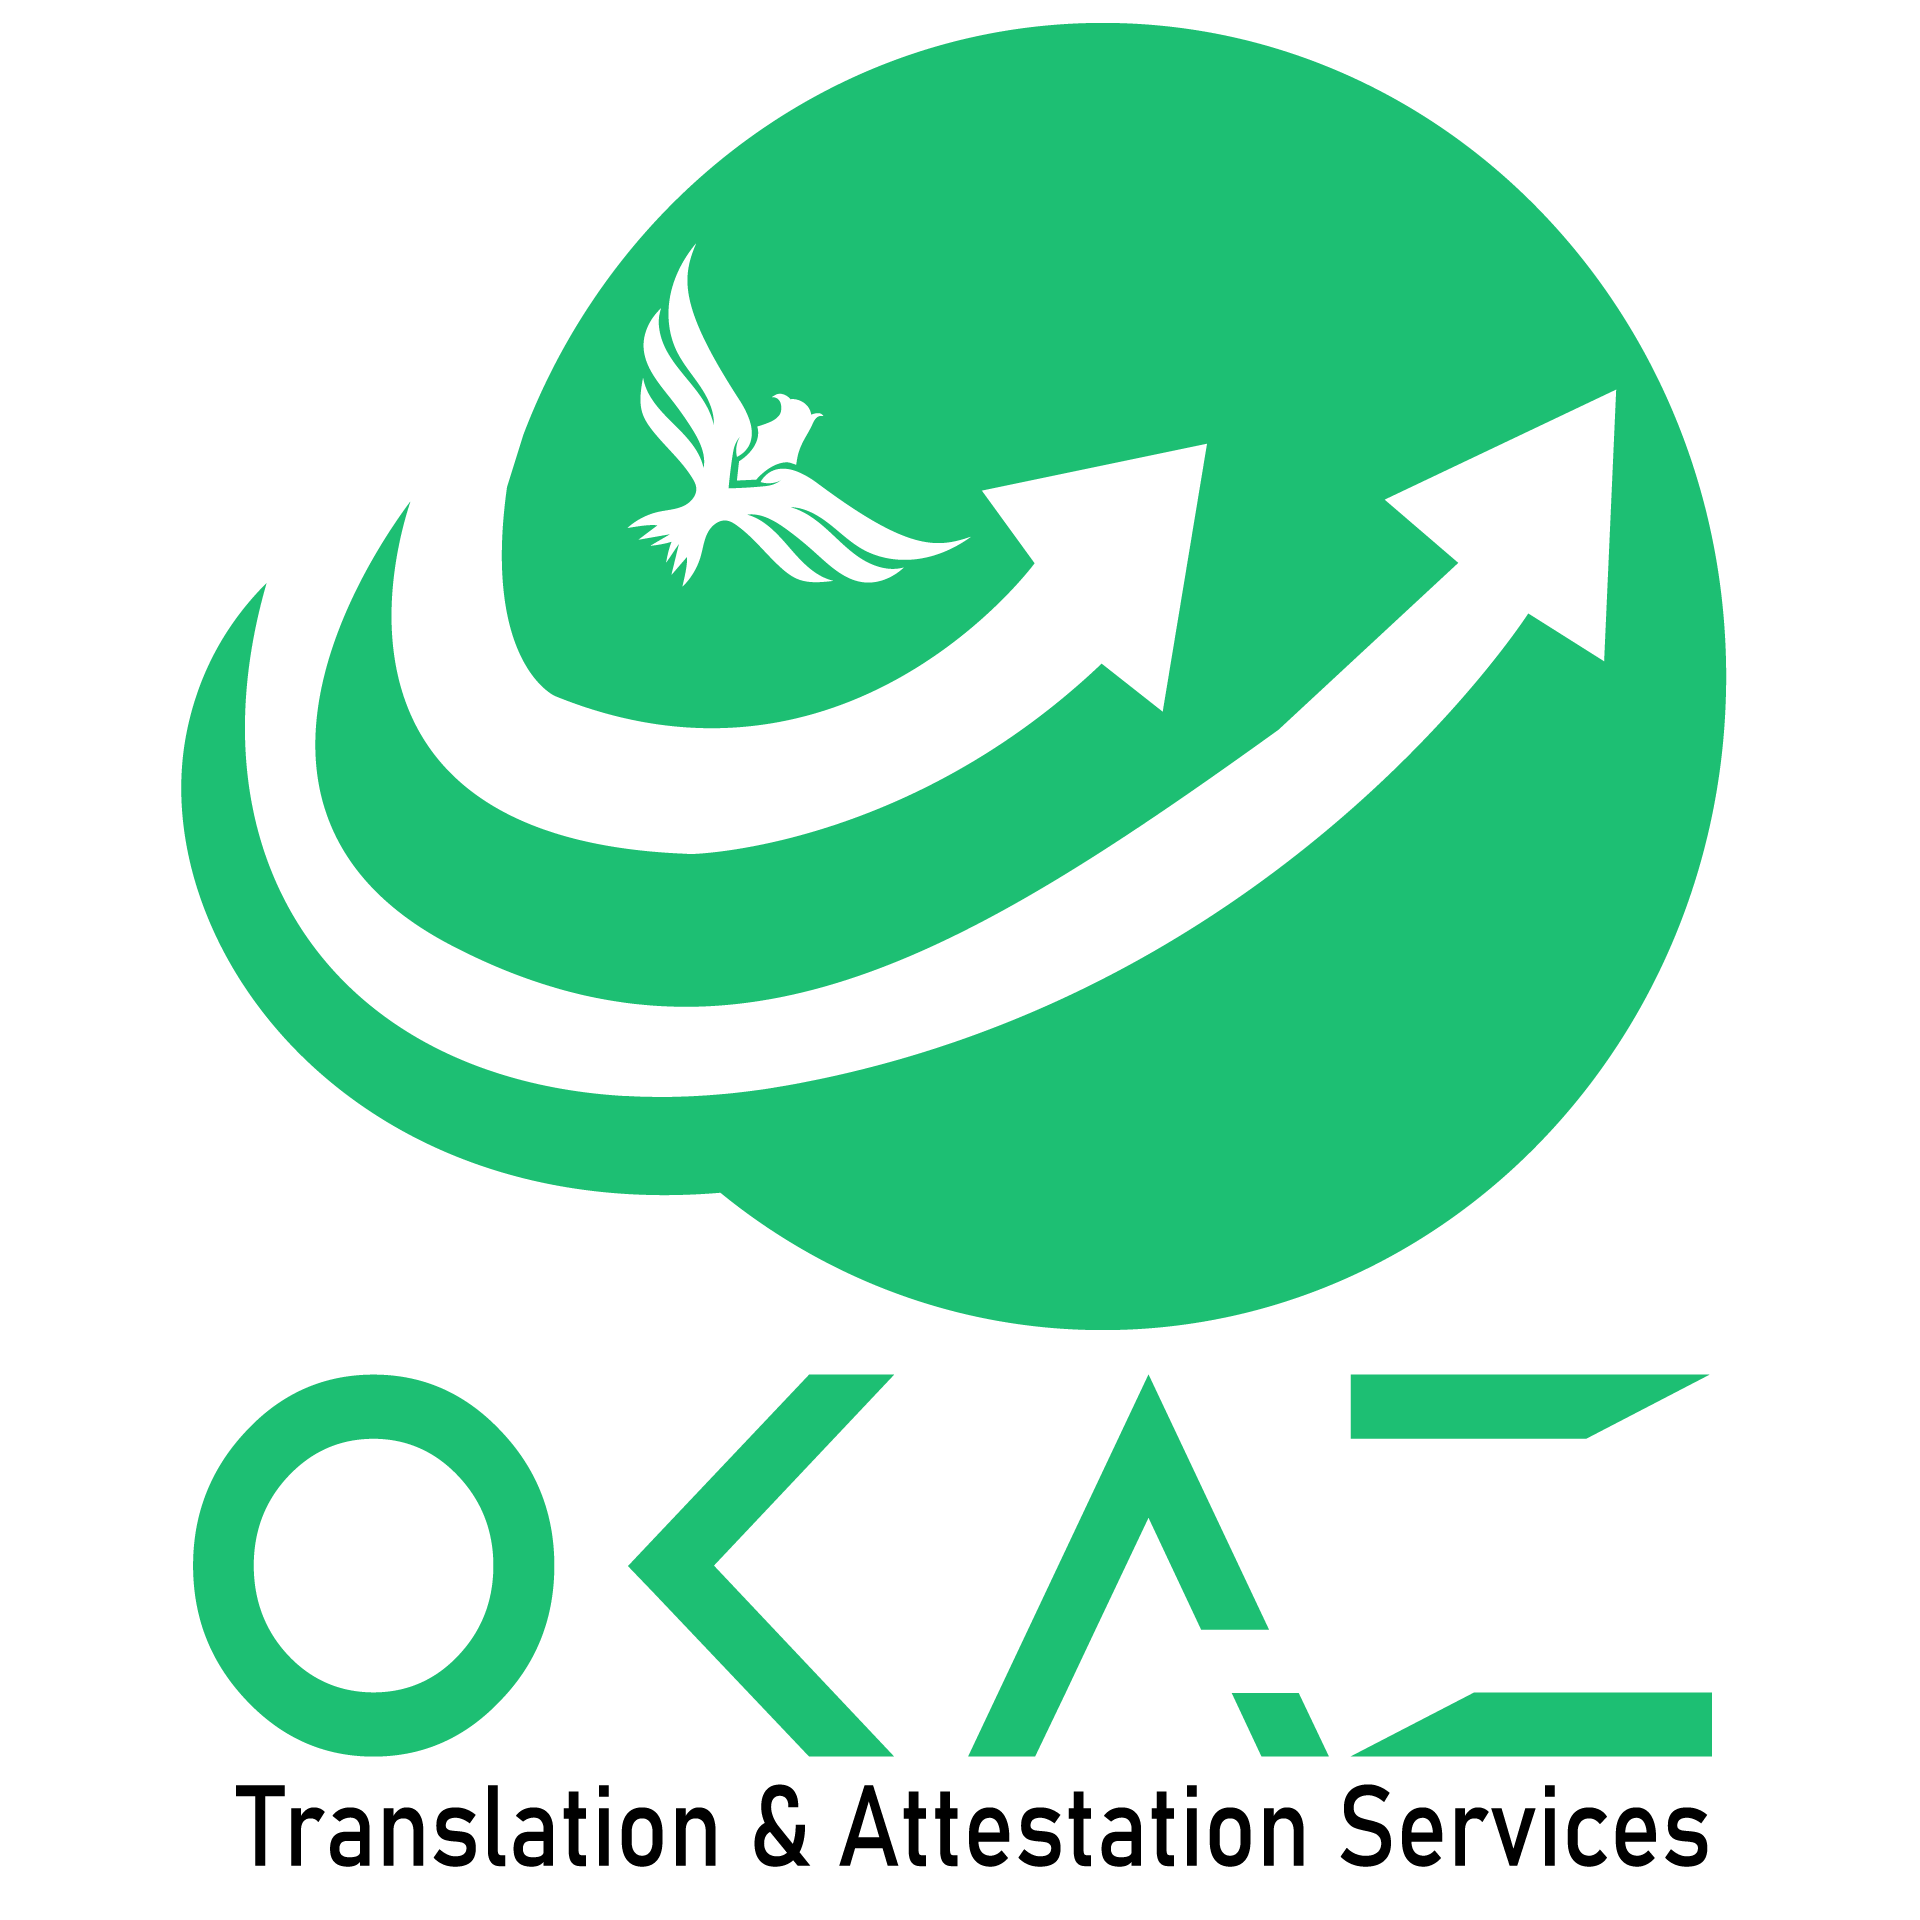 Okaz Translation & Attestation Services